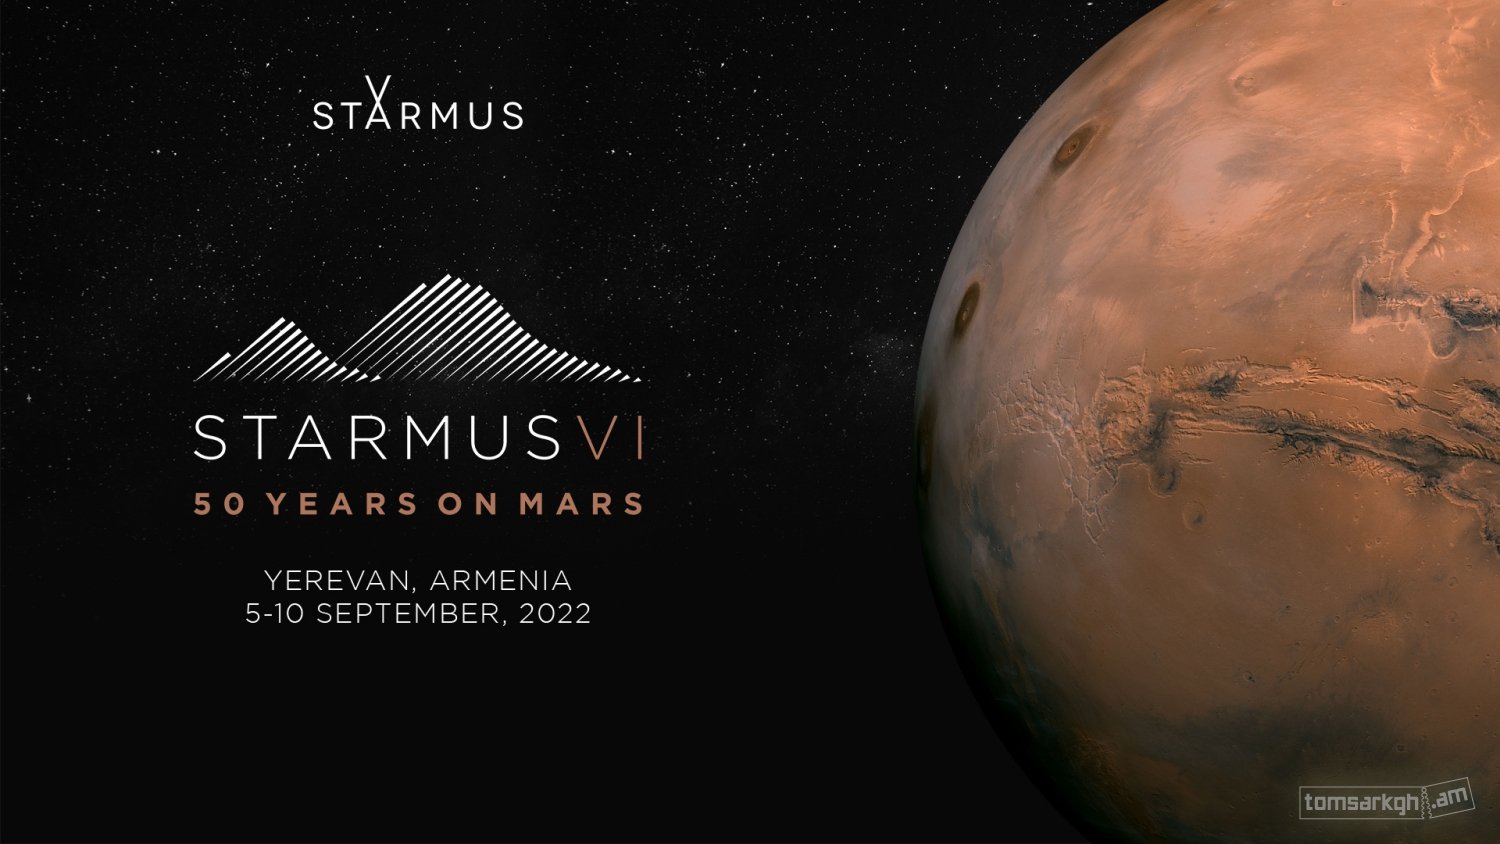 Հայաստանը մի քանի օրով վերածվելու է աշխարհի գիտական-տեխնոլոգիական կենտրոնի. STARMUS-ը գալիս է Հայաստան